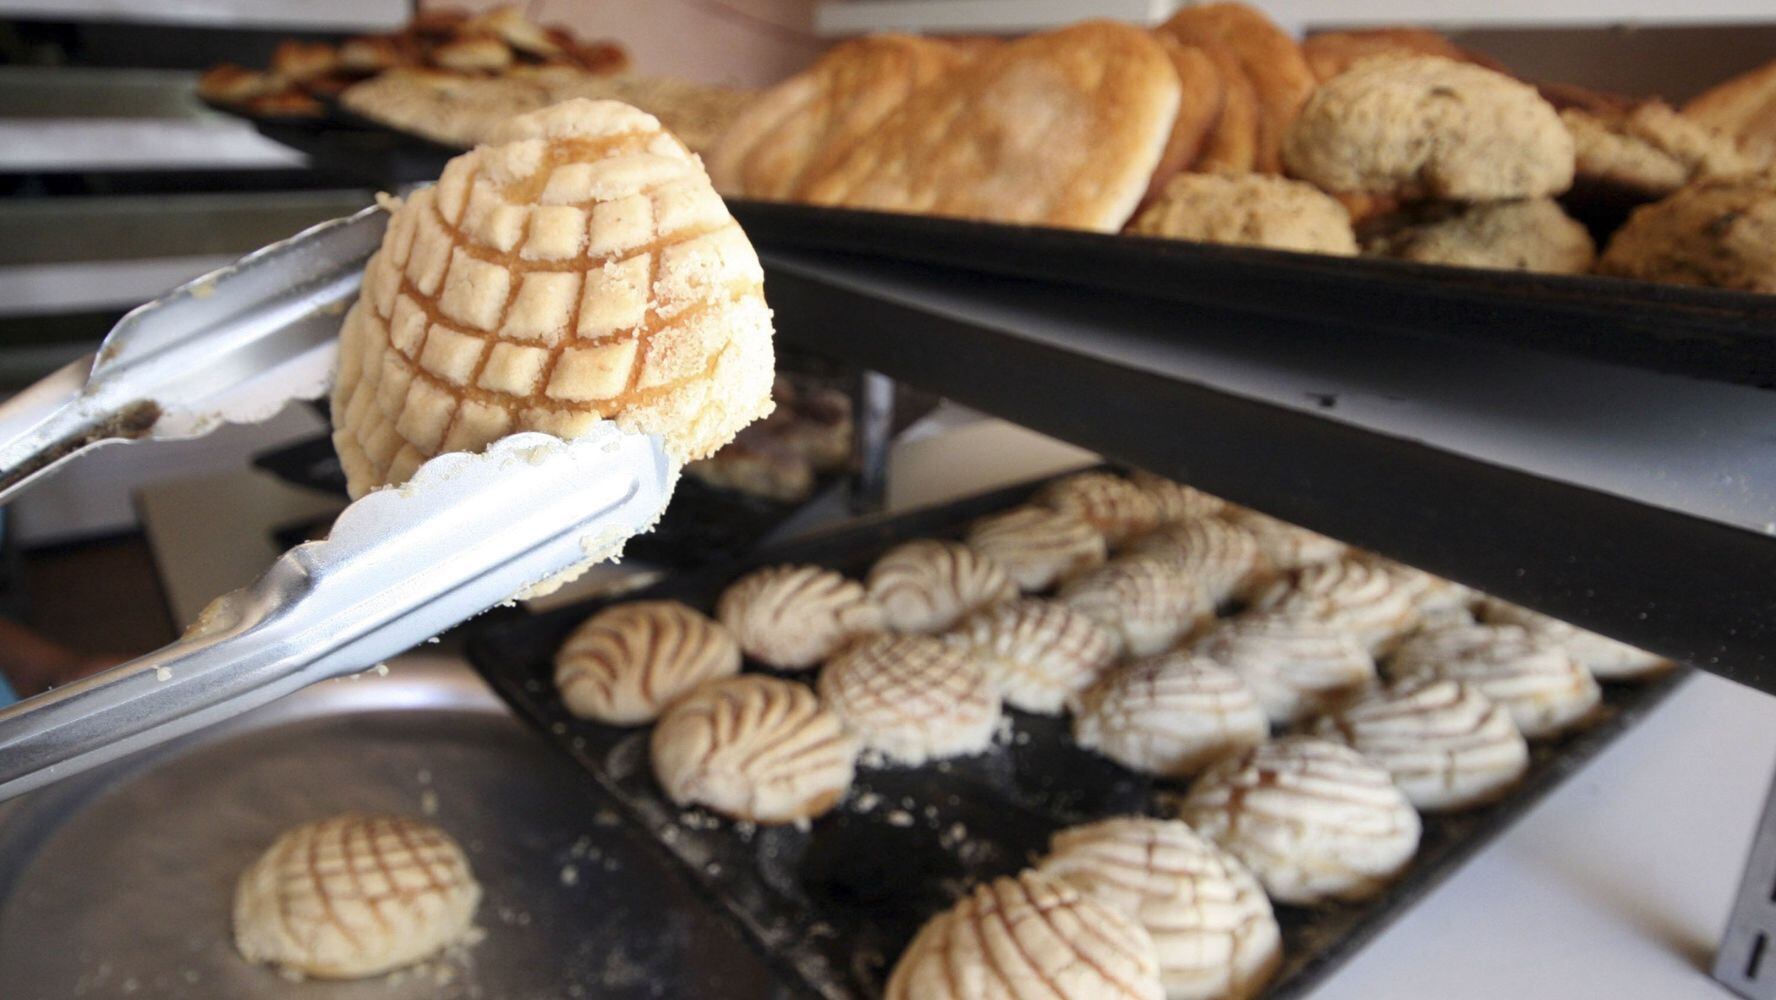 El pan dulce es un alimento que puede producir inflamación en el cuerpo. (Foto: Cuartoscuro / Hilda Ríos)